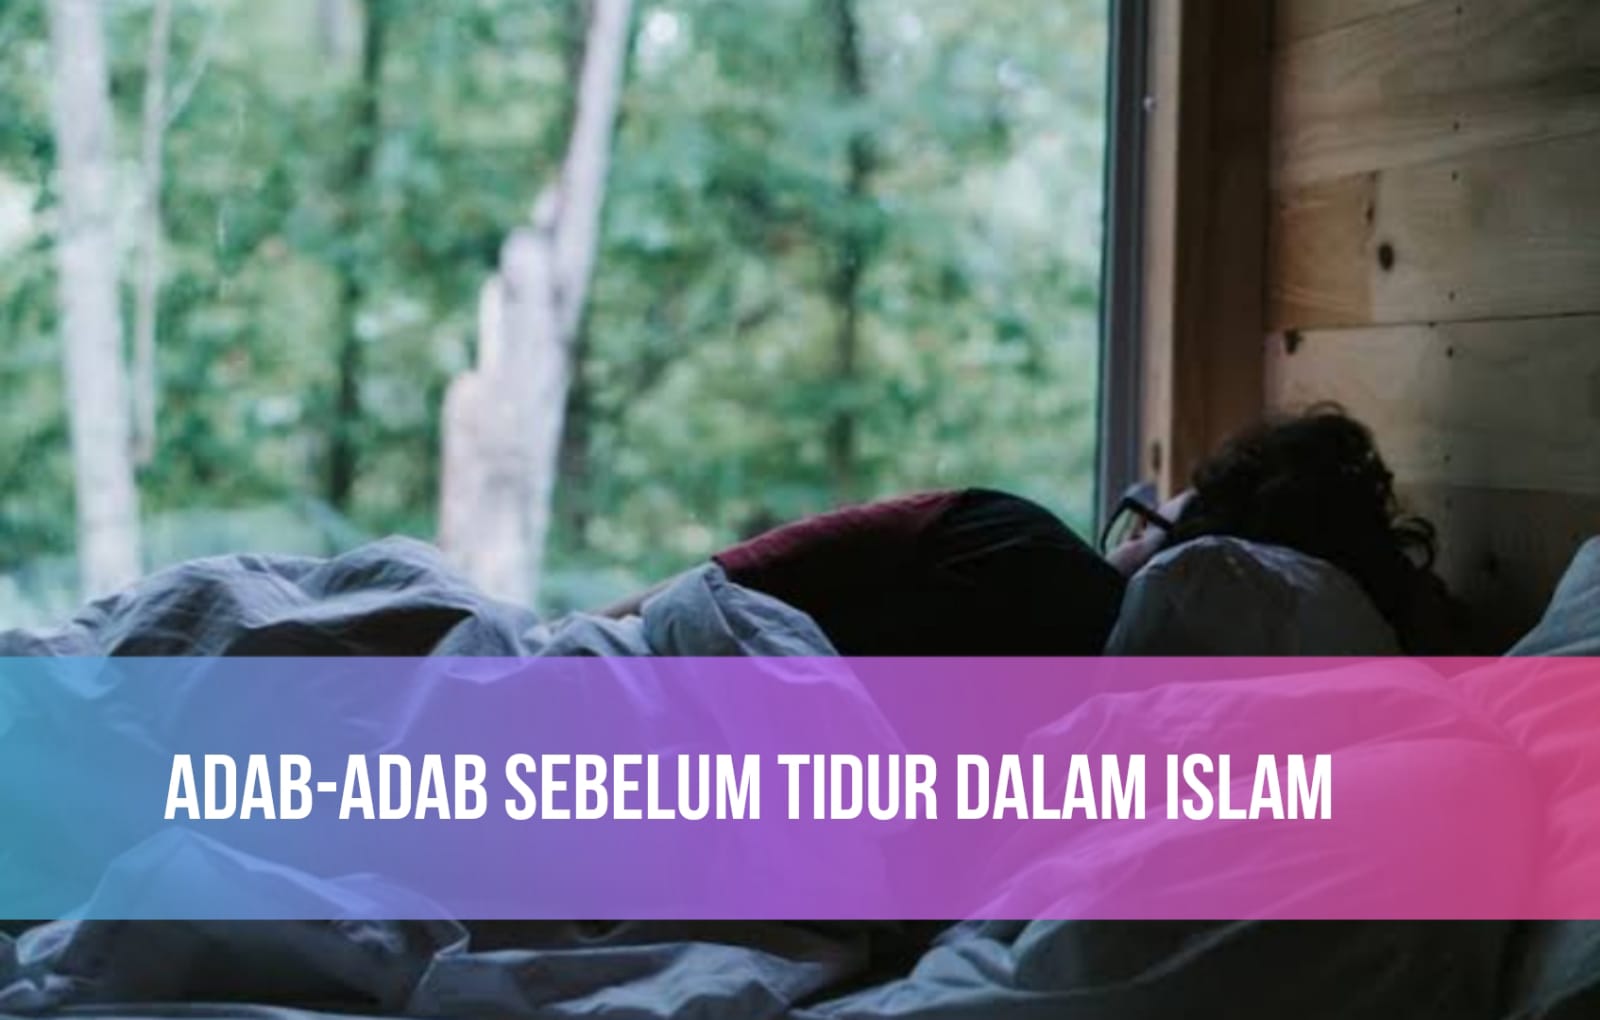 Segera Biasakan! Ini 5 Adab Sebelum Tidur dalam Islam, Tidur Nyenyak dan Berpahala